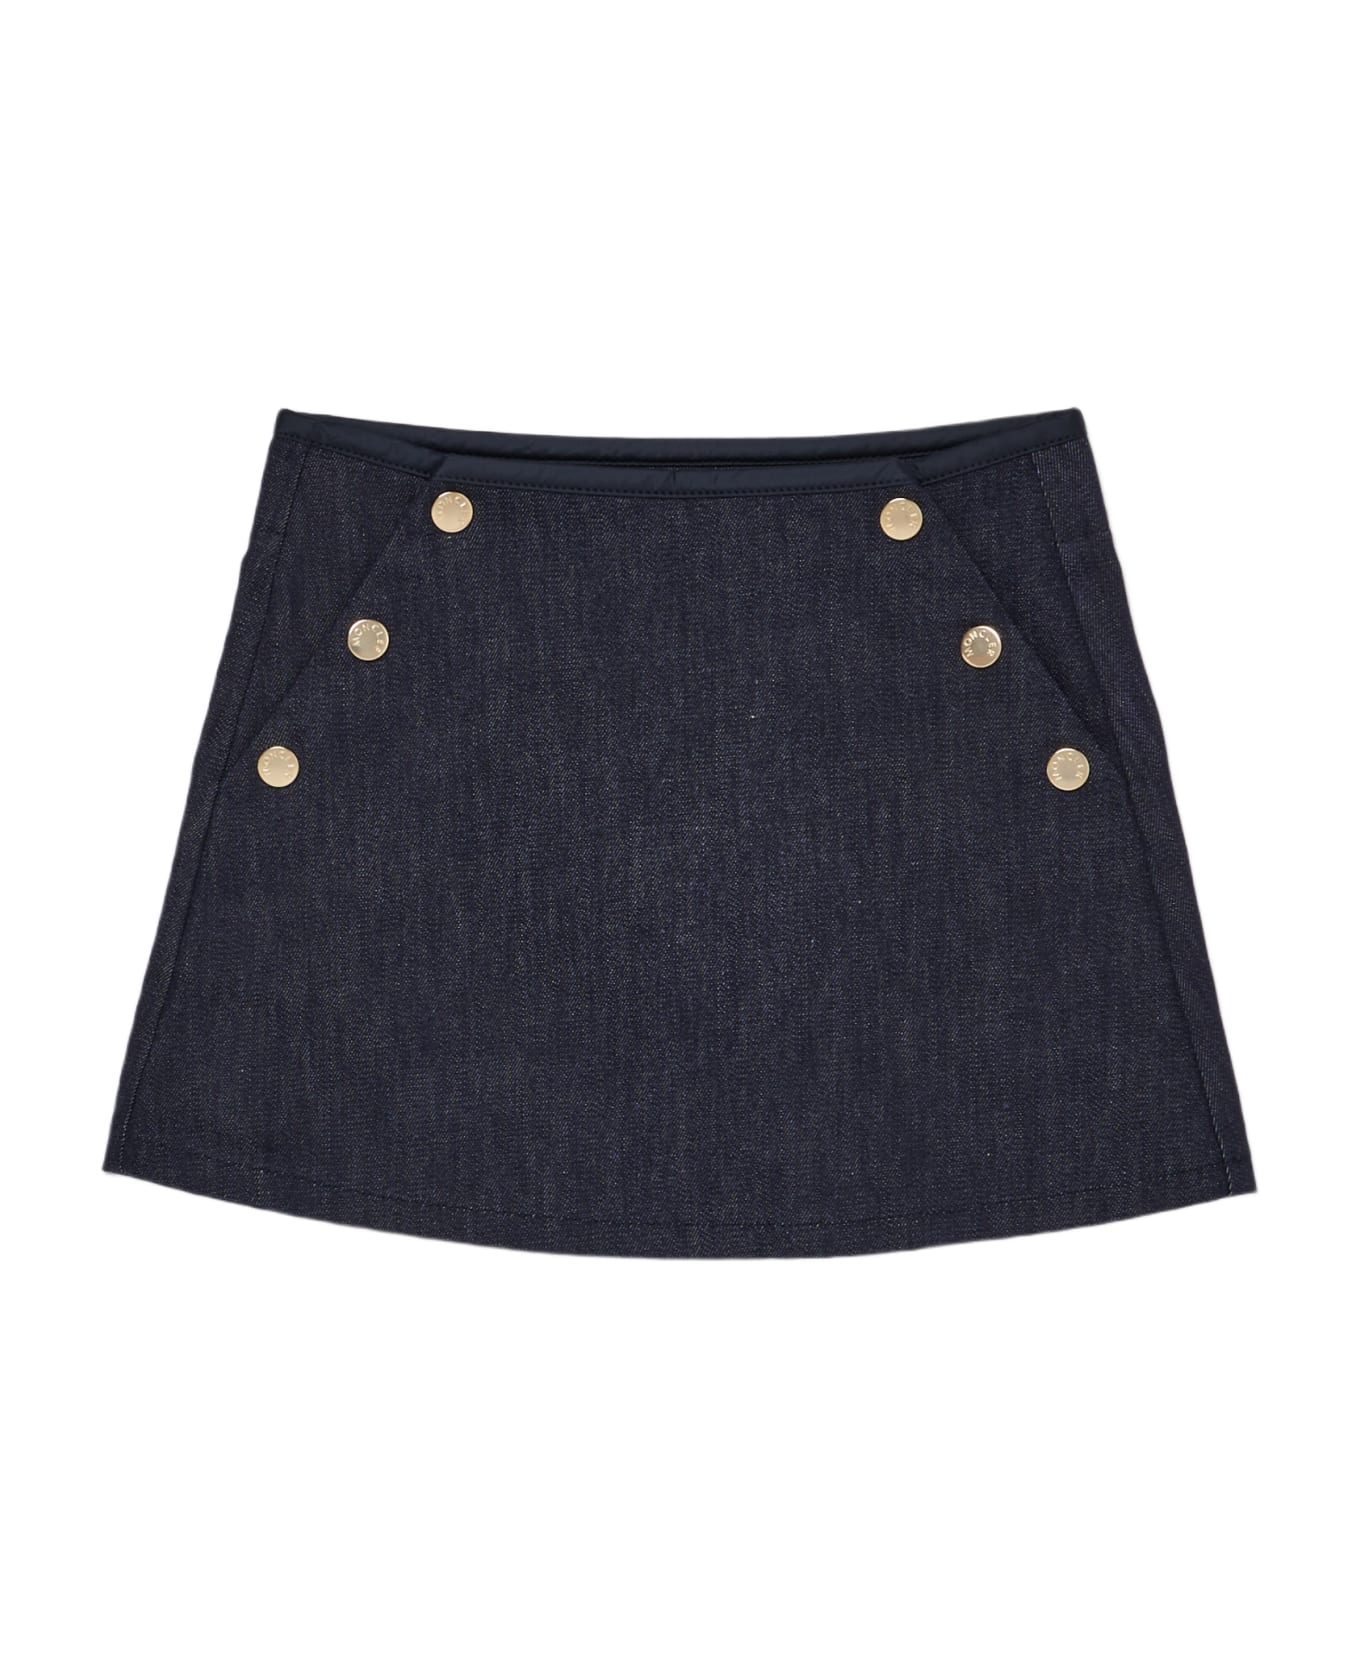 Moncler Skirt Skirt - DENIM SCURO ボトムス